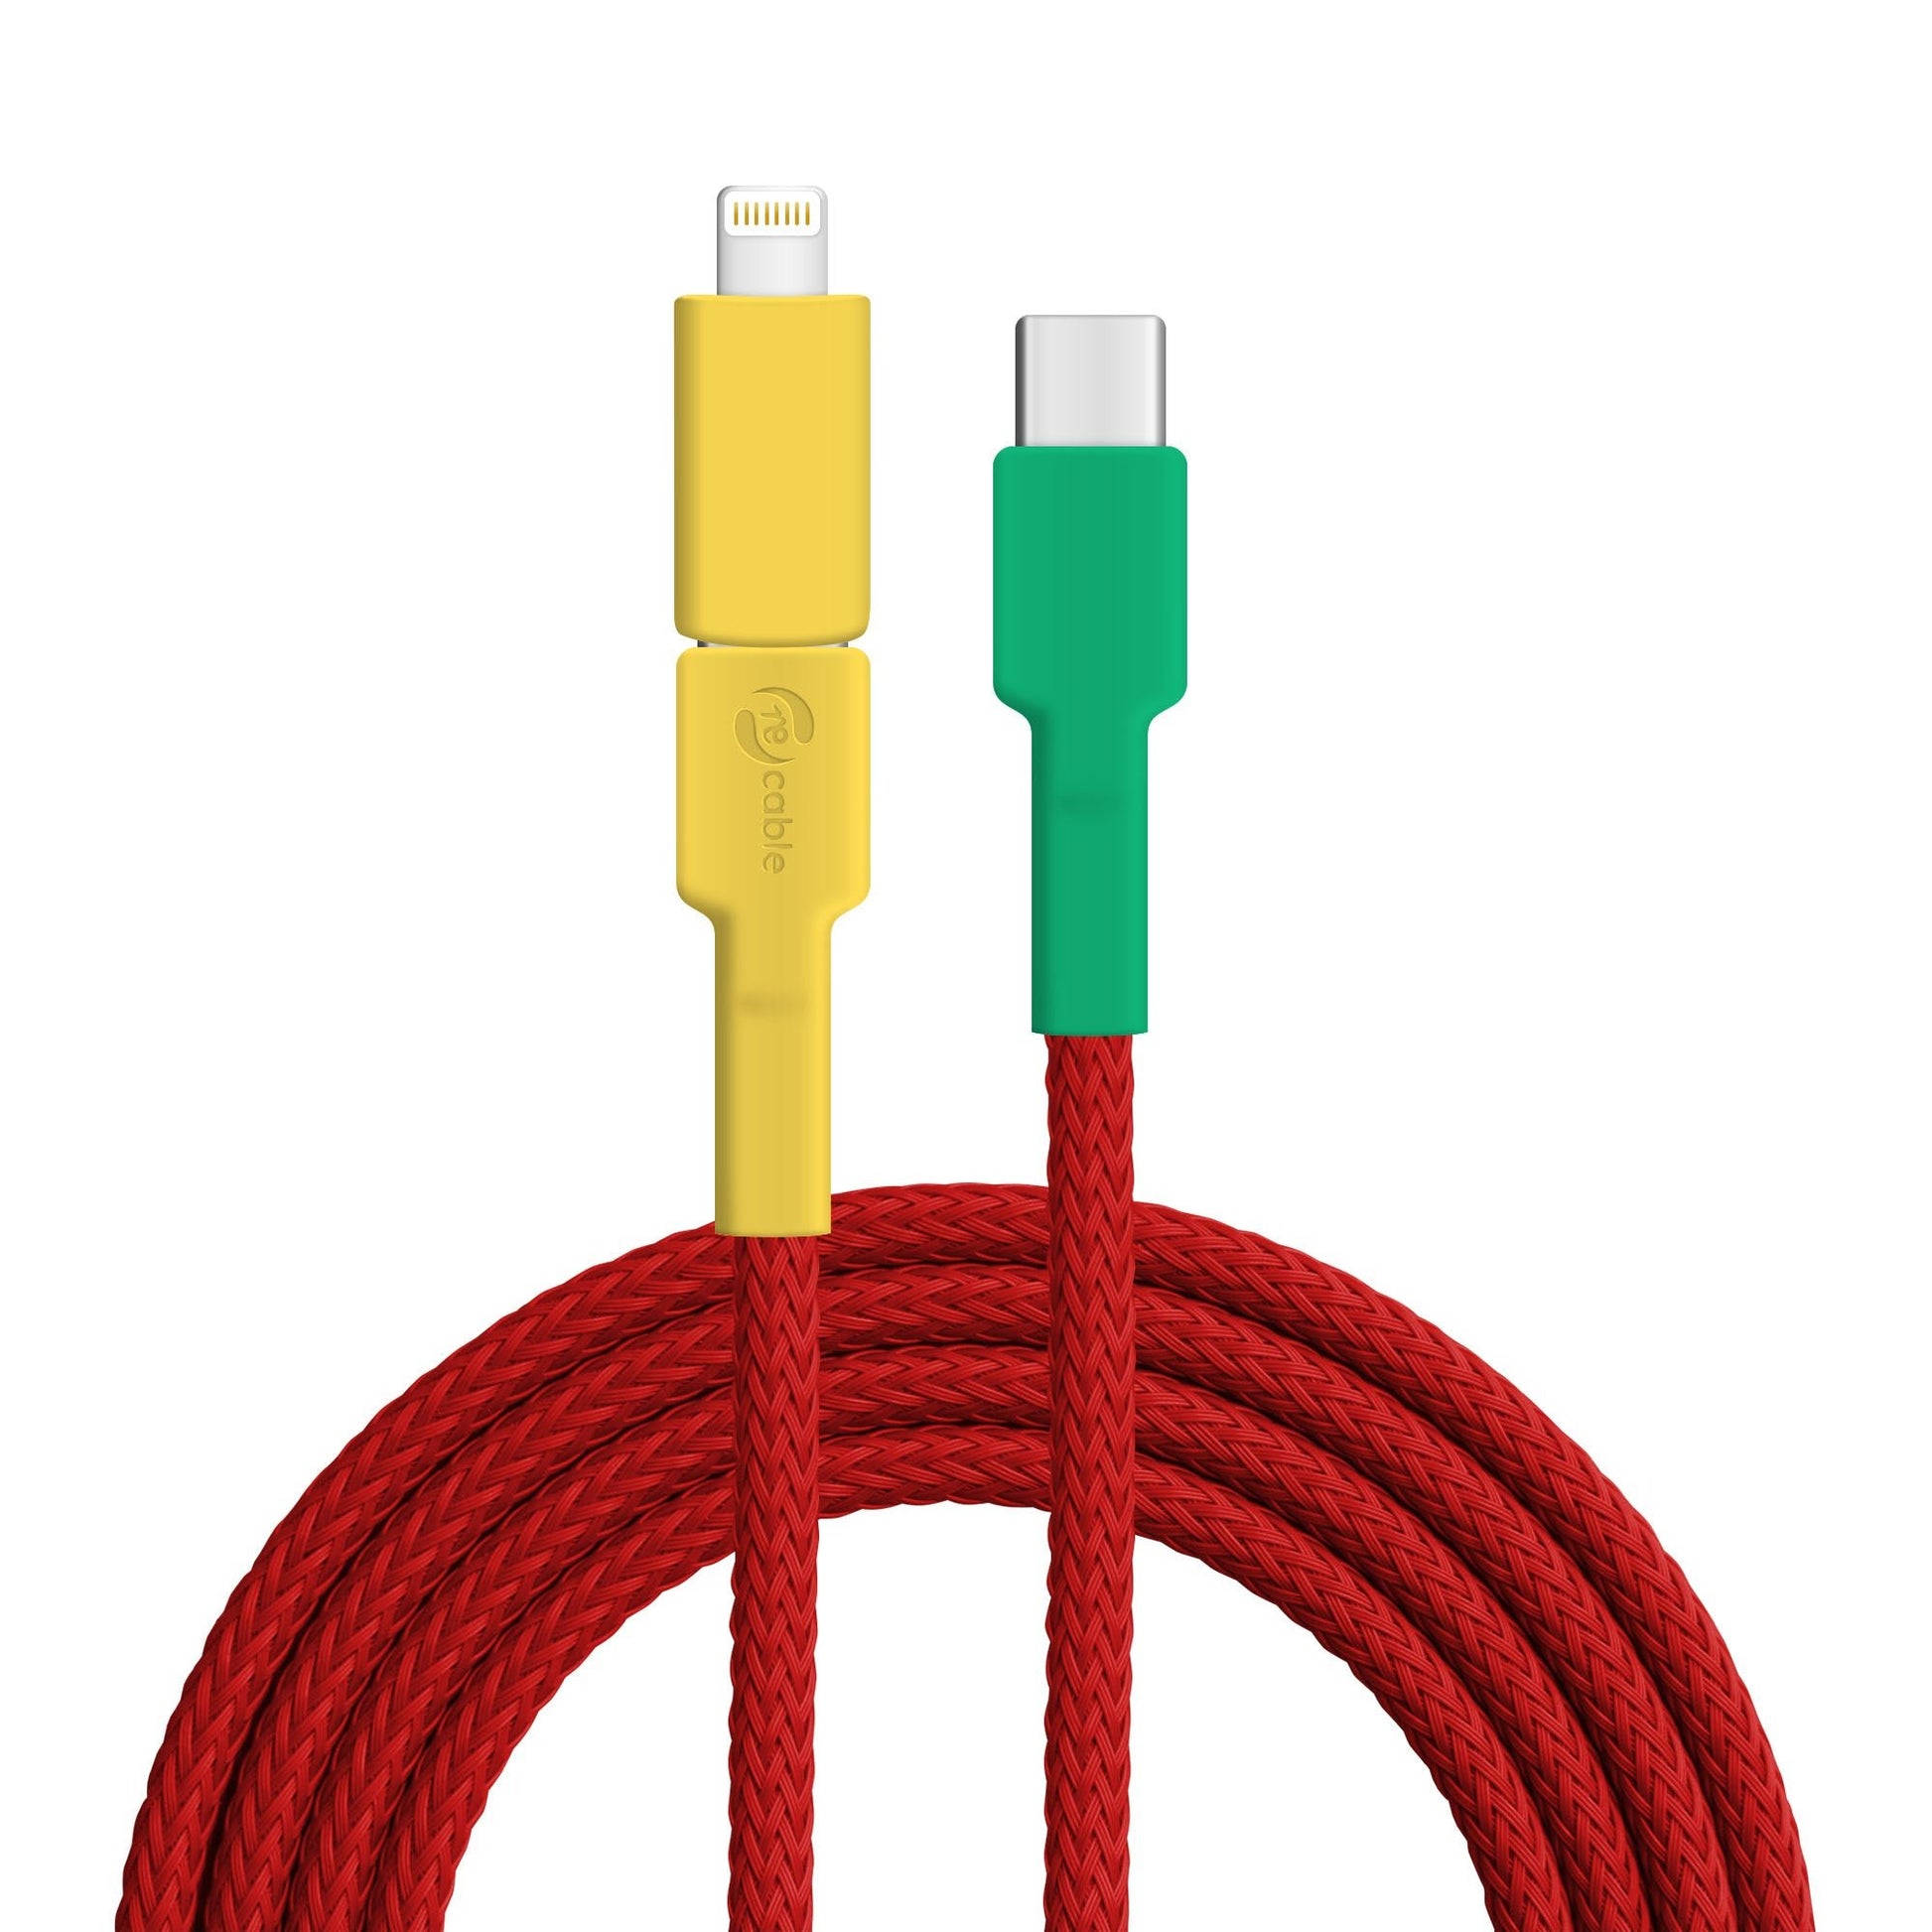 USB-Lightining Ladekabel (1M) für Apple iPhone & iPad, 9,90 €